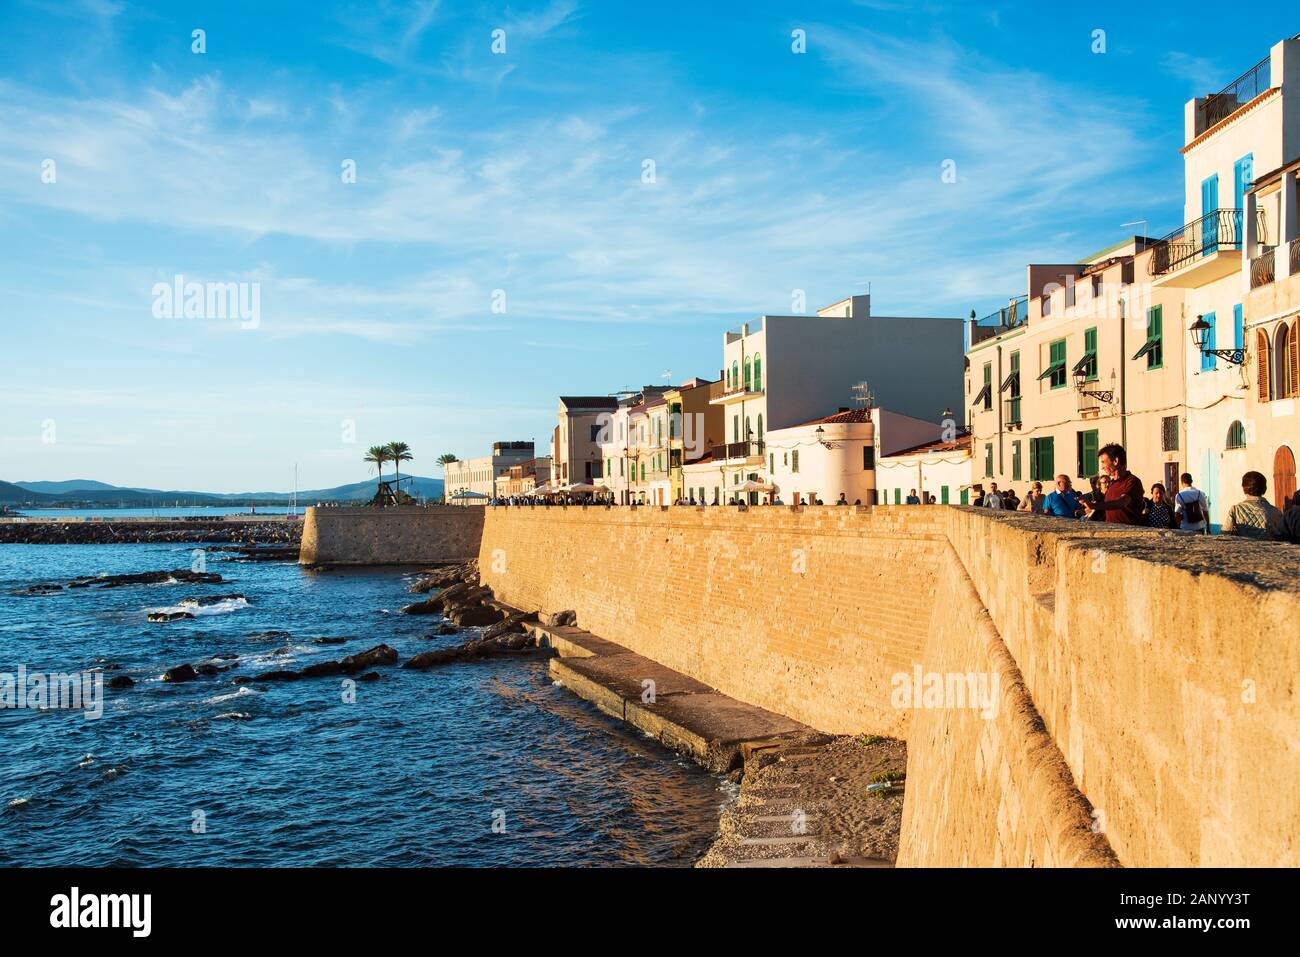 ALGHERO, Italia - 17 settembre 2017: la gente alla parete circostante, accanto al mare, del Centro Storico, la città vecchia di Alghero, in Sardegna, Ita Foto Stock